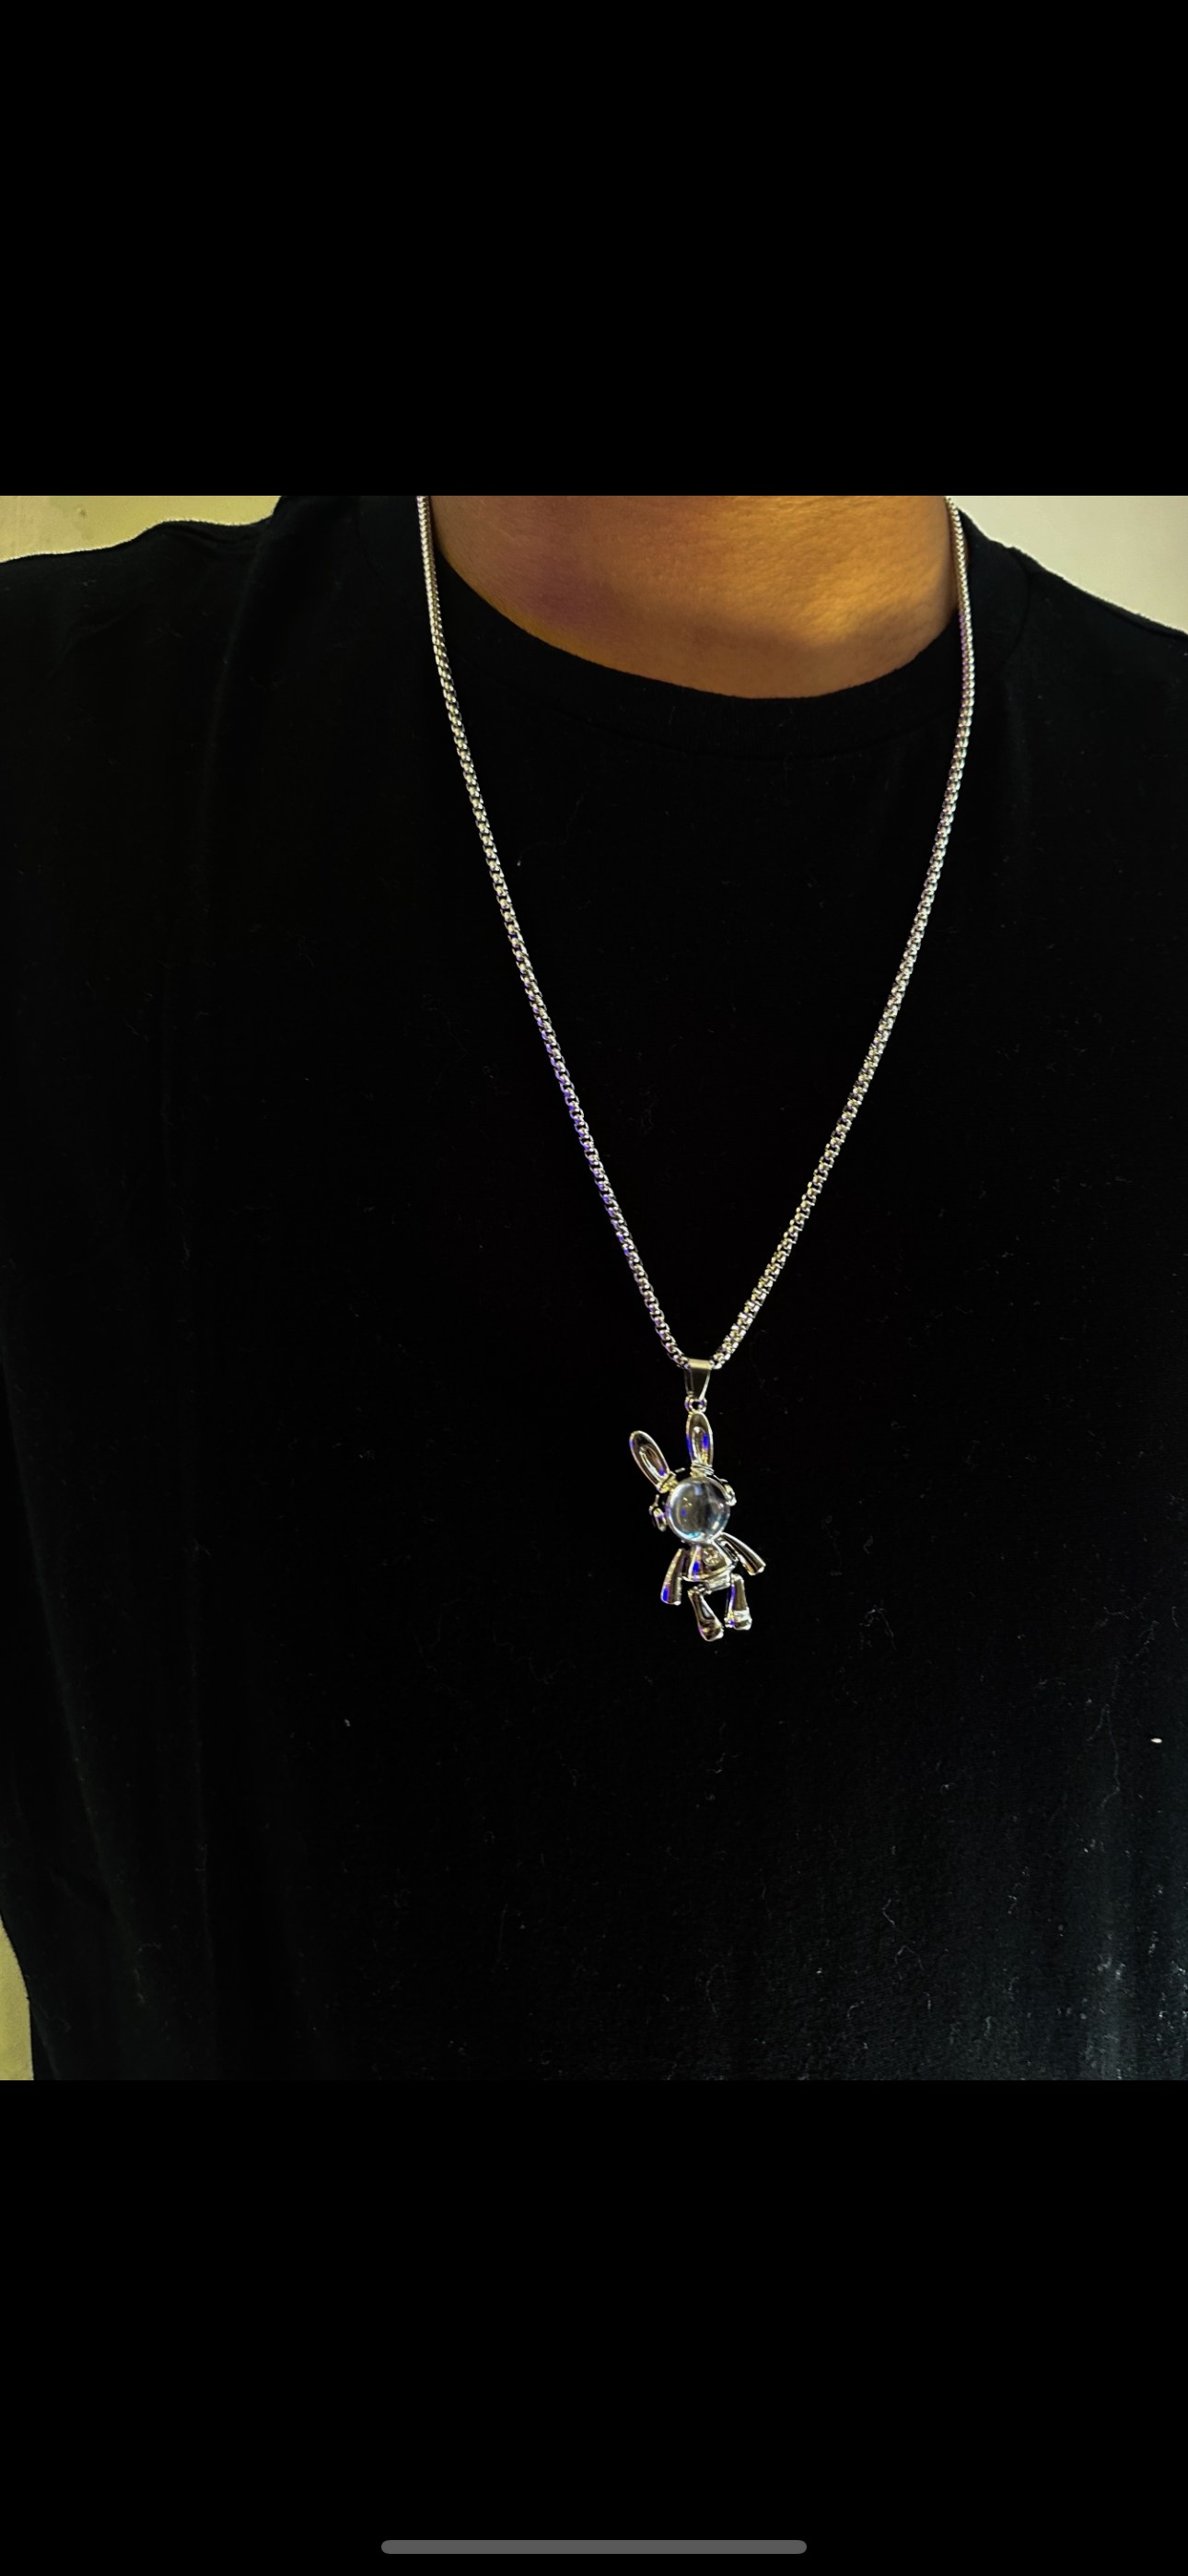 Space Astro Bunny Necklace